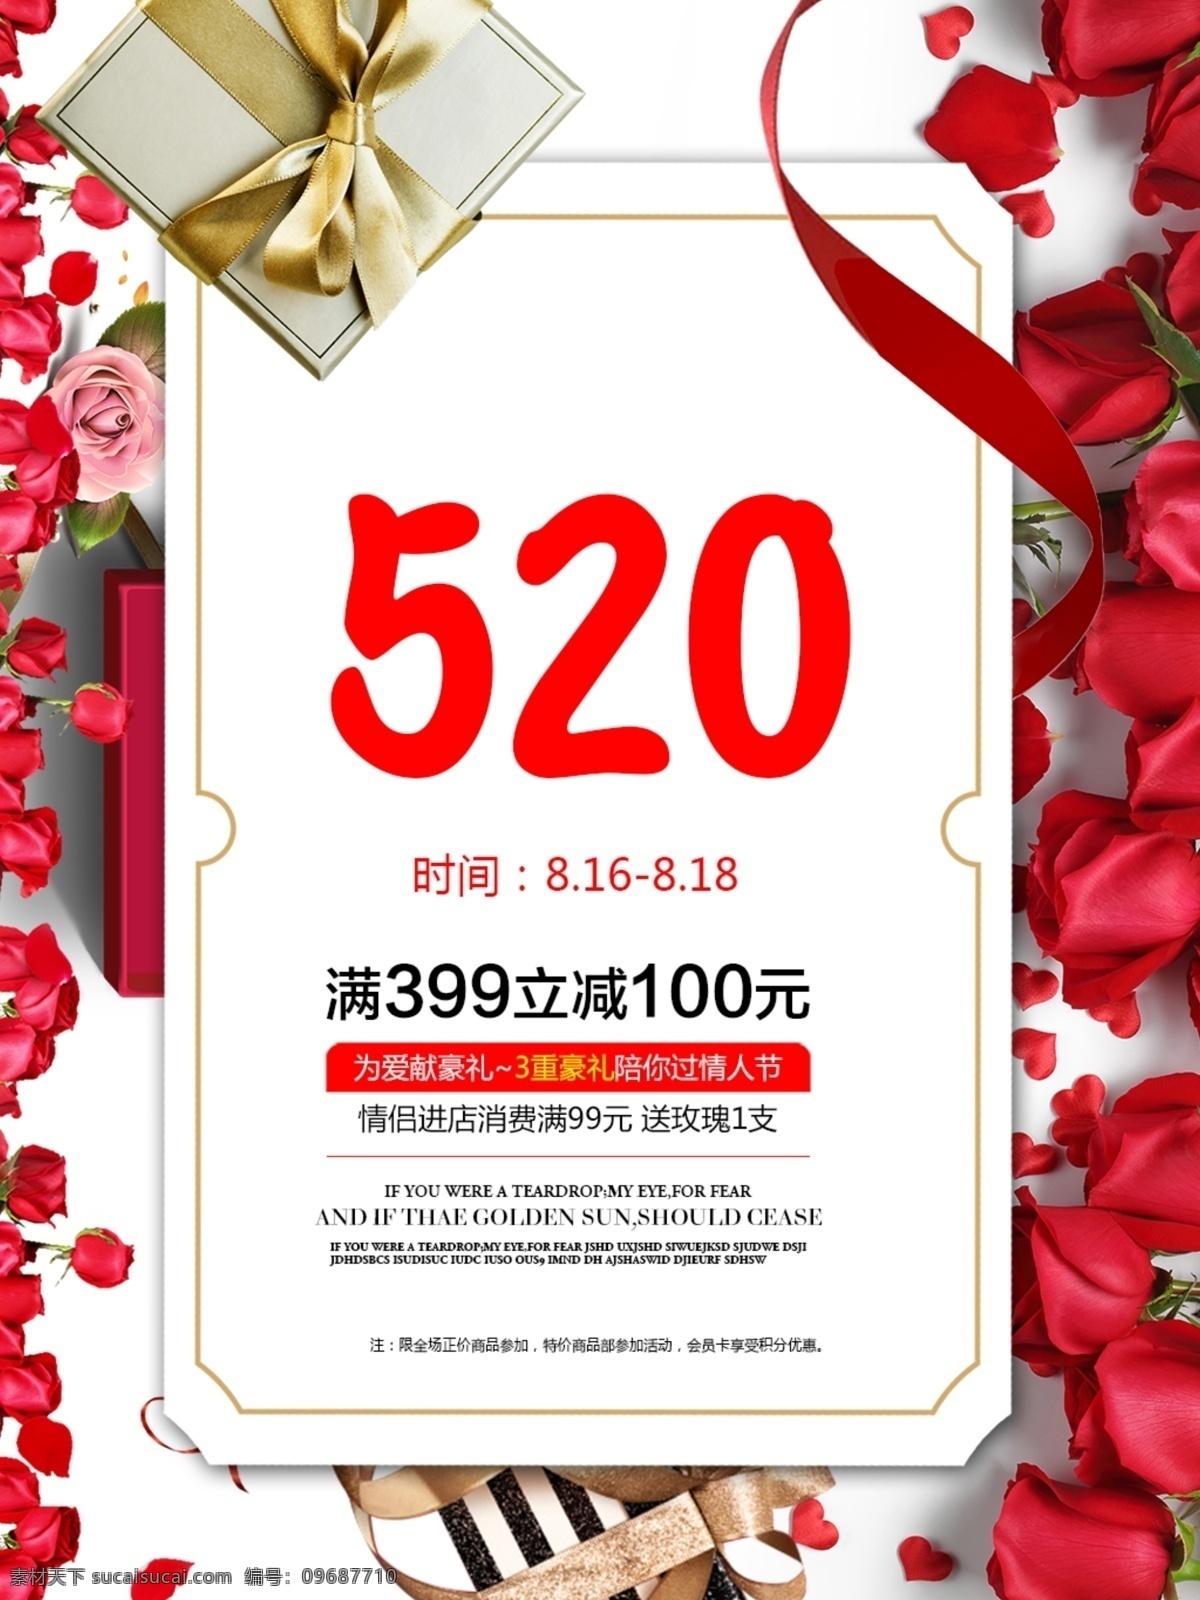 七夕 节日 促销 海报 情人节 520 打折 玫瑰花 立减 推销 情书